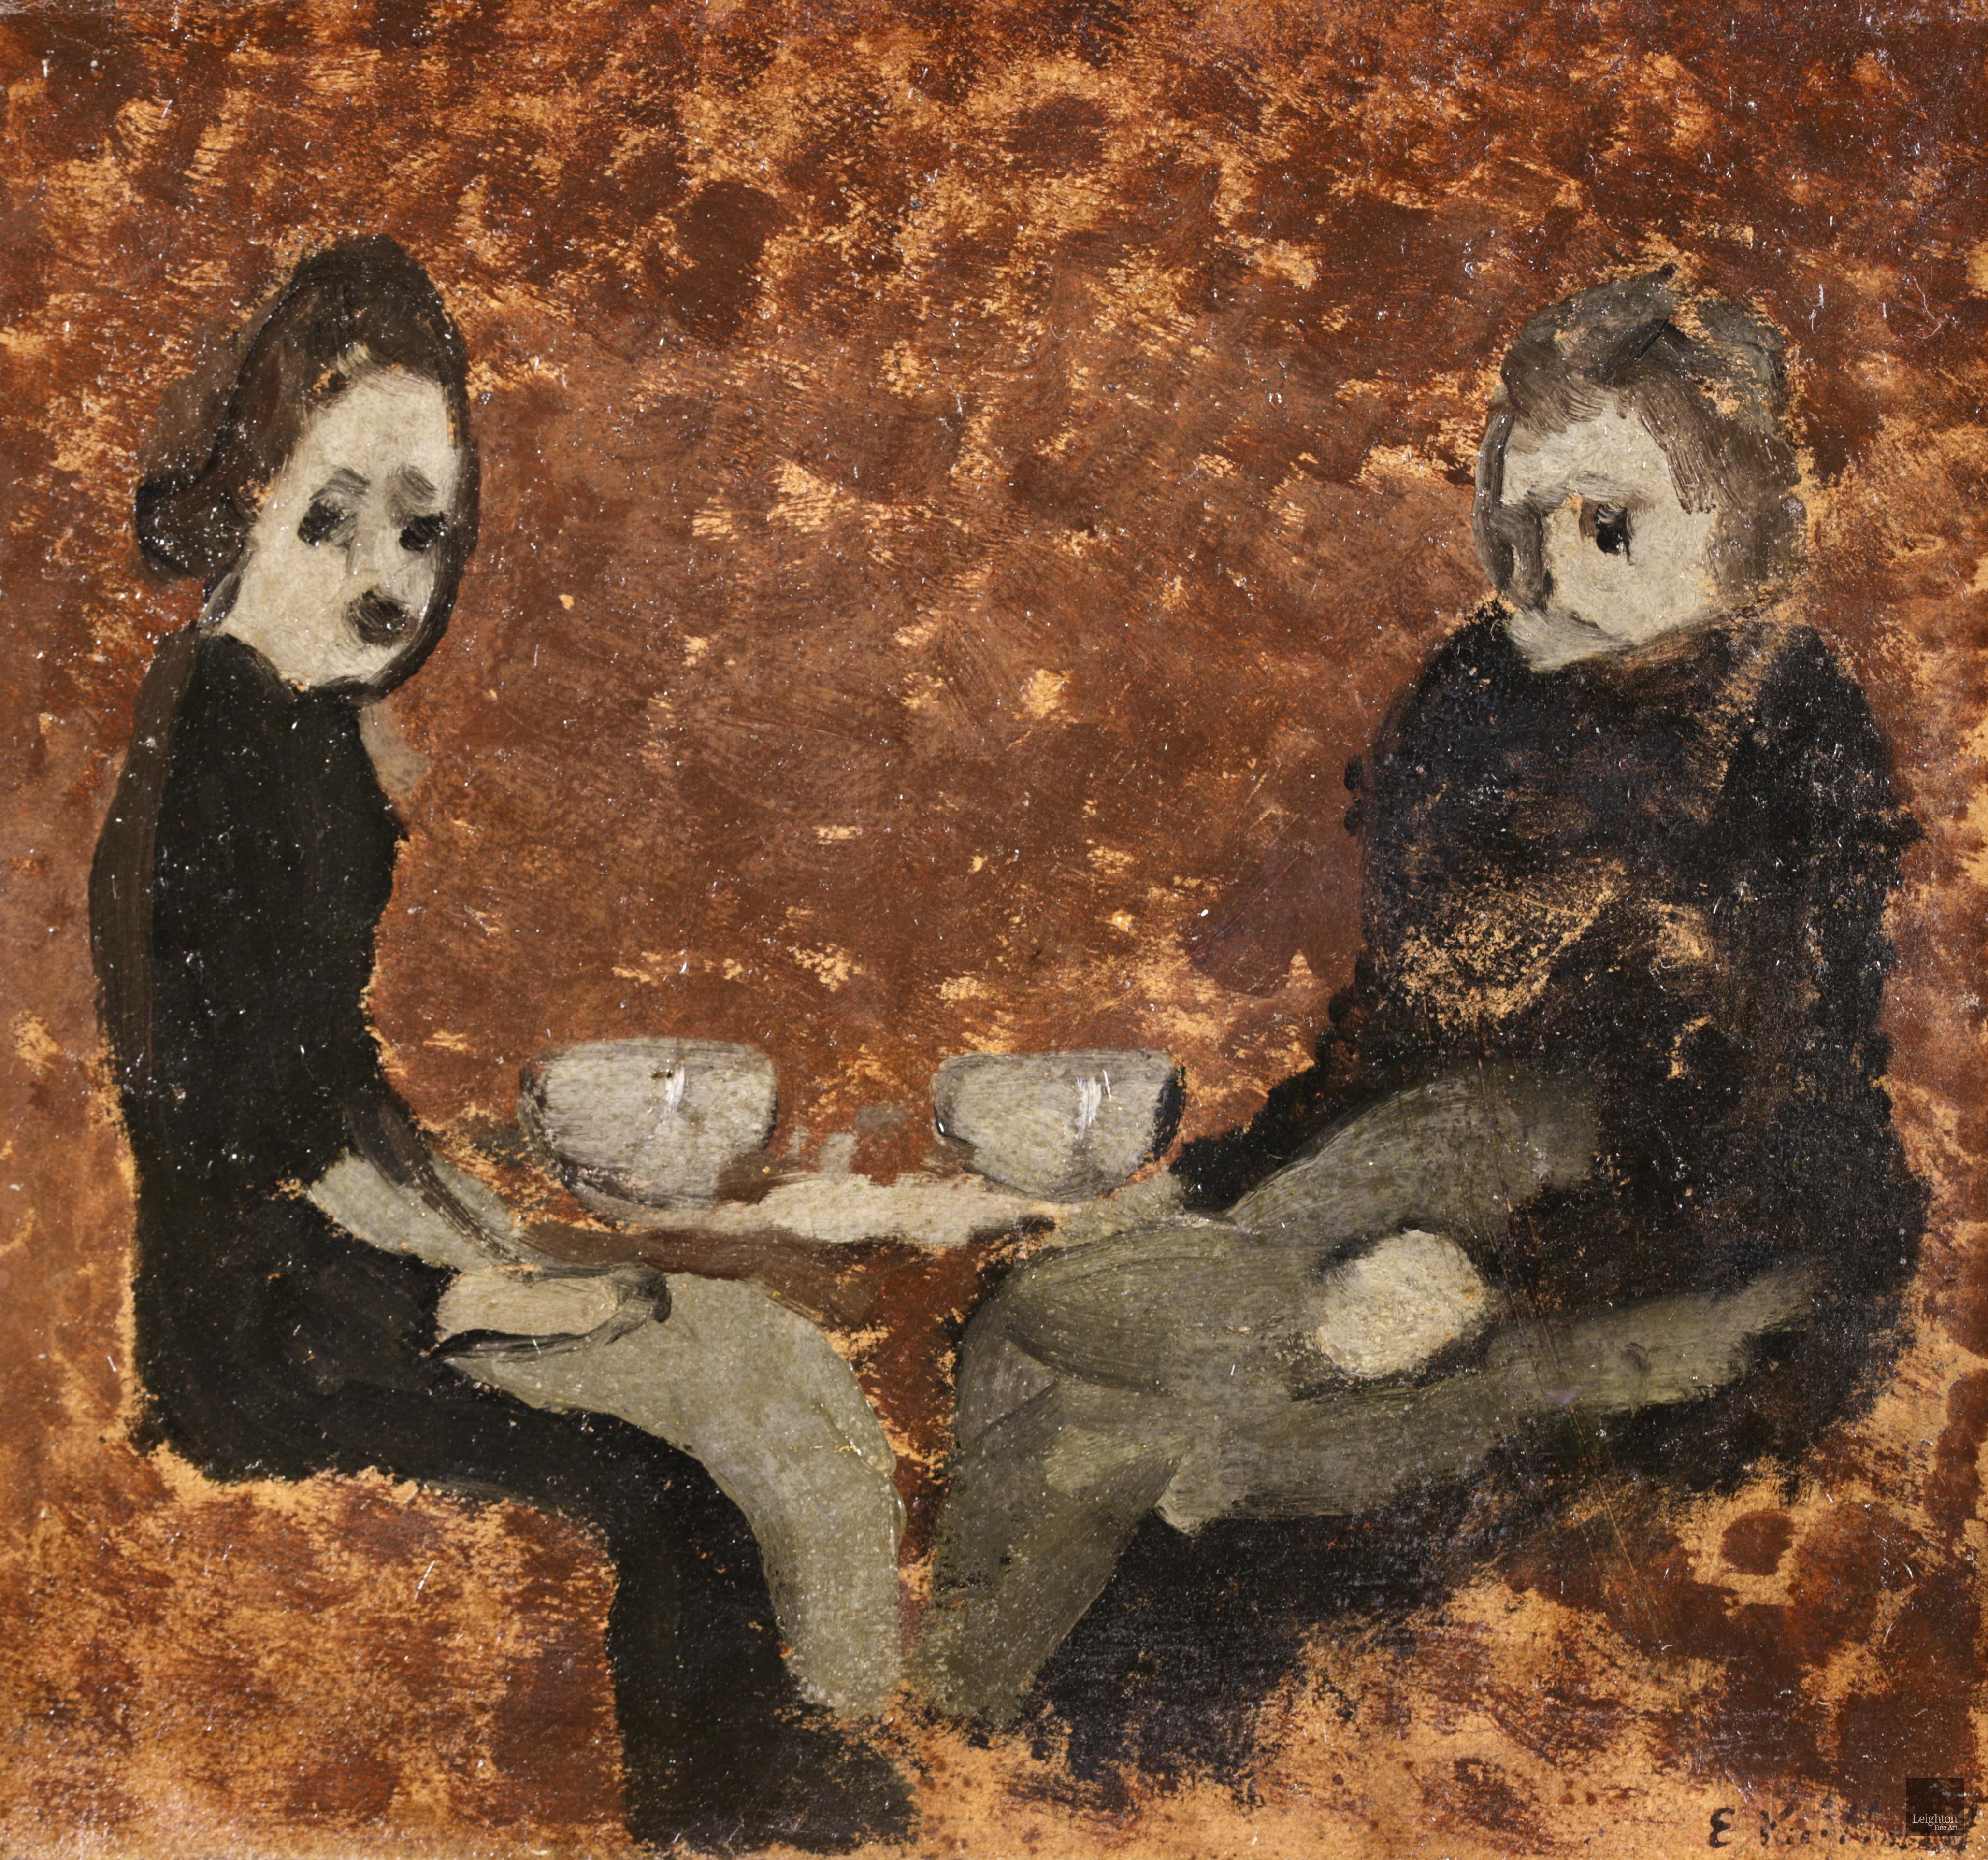 Huile figurative sur panneau signée vers 1890 par le peintre français de l'école des Nabis Edouard Vuillard. L'œuvre représente deux dames assises, vêtues de noir et d'une blouse grise, prenant un café ensemble.

Illustré dans le Catalogue raisonné